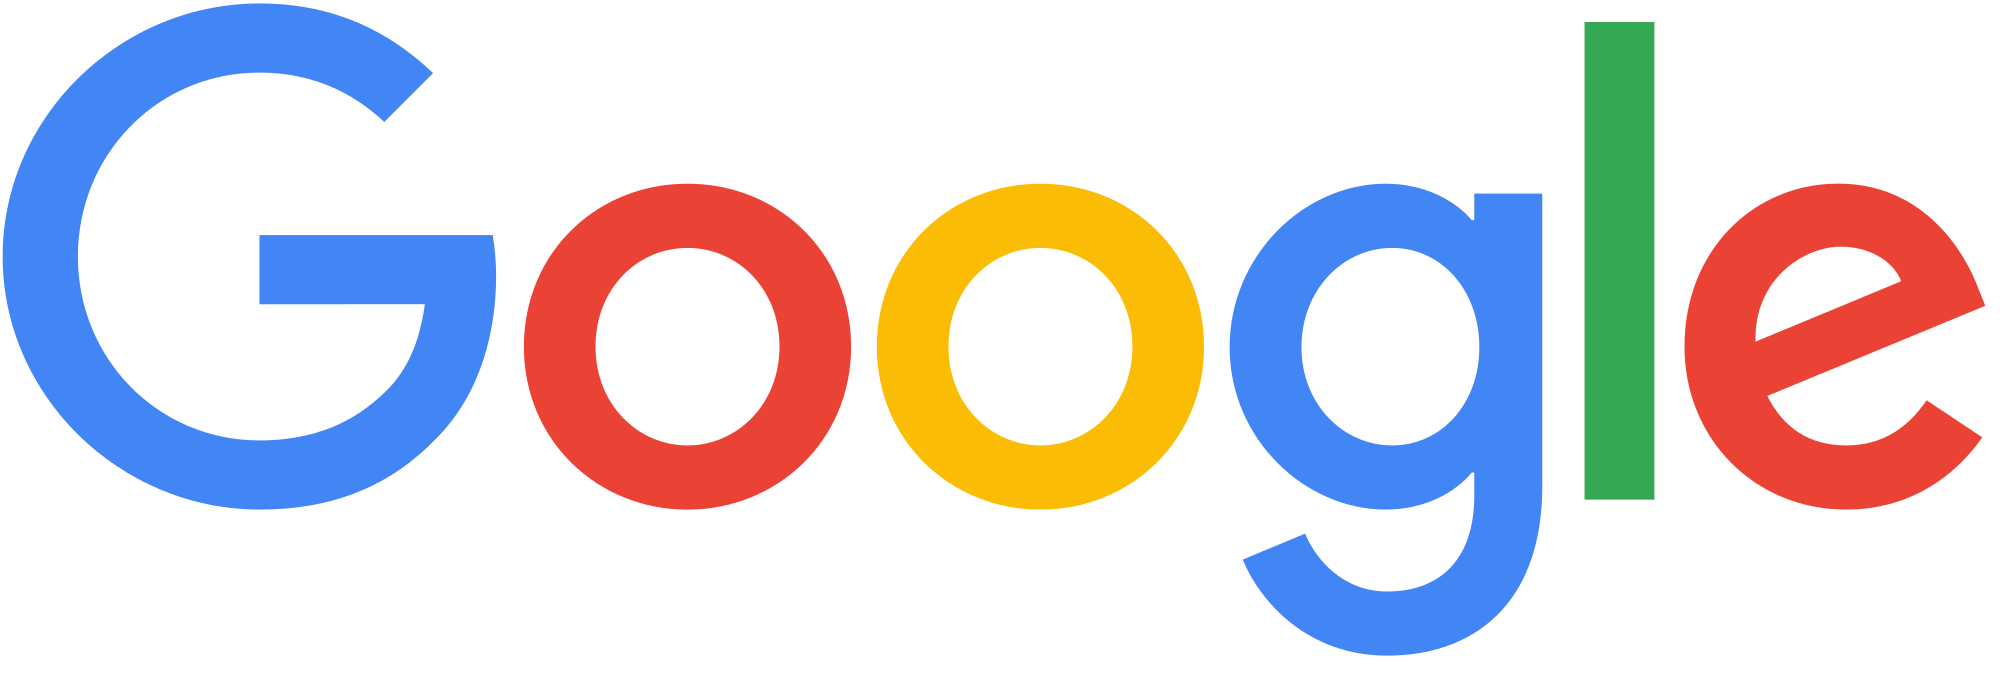 google_2015_logo_detail.png